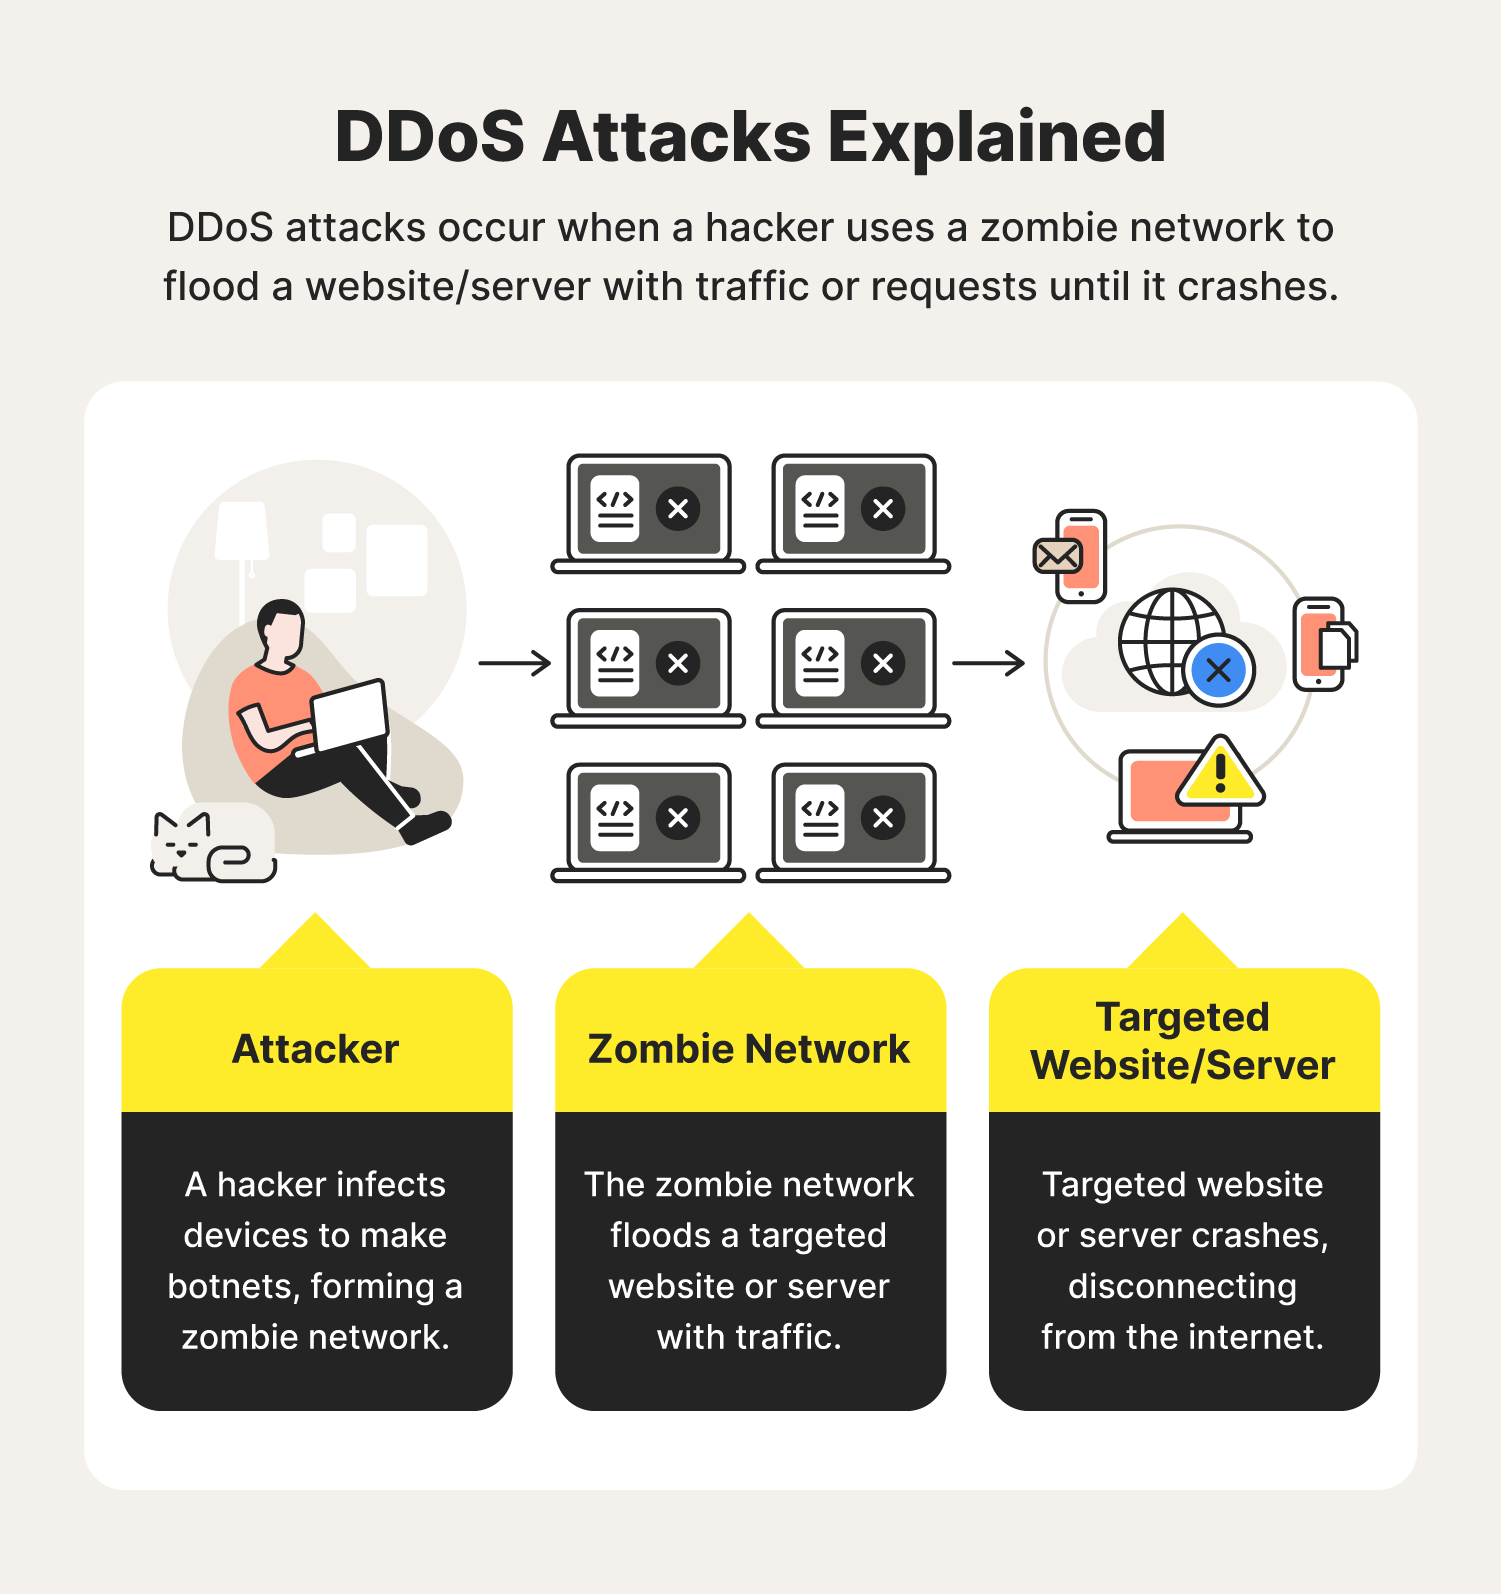 Ddos attacks explained